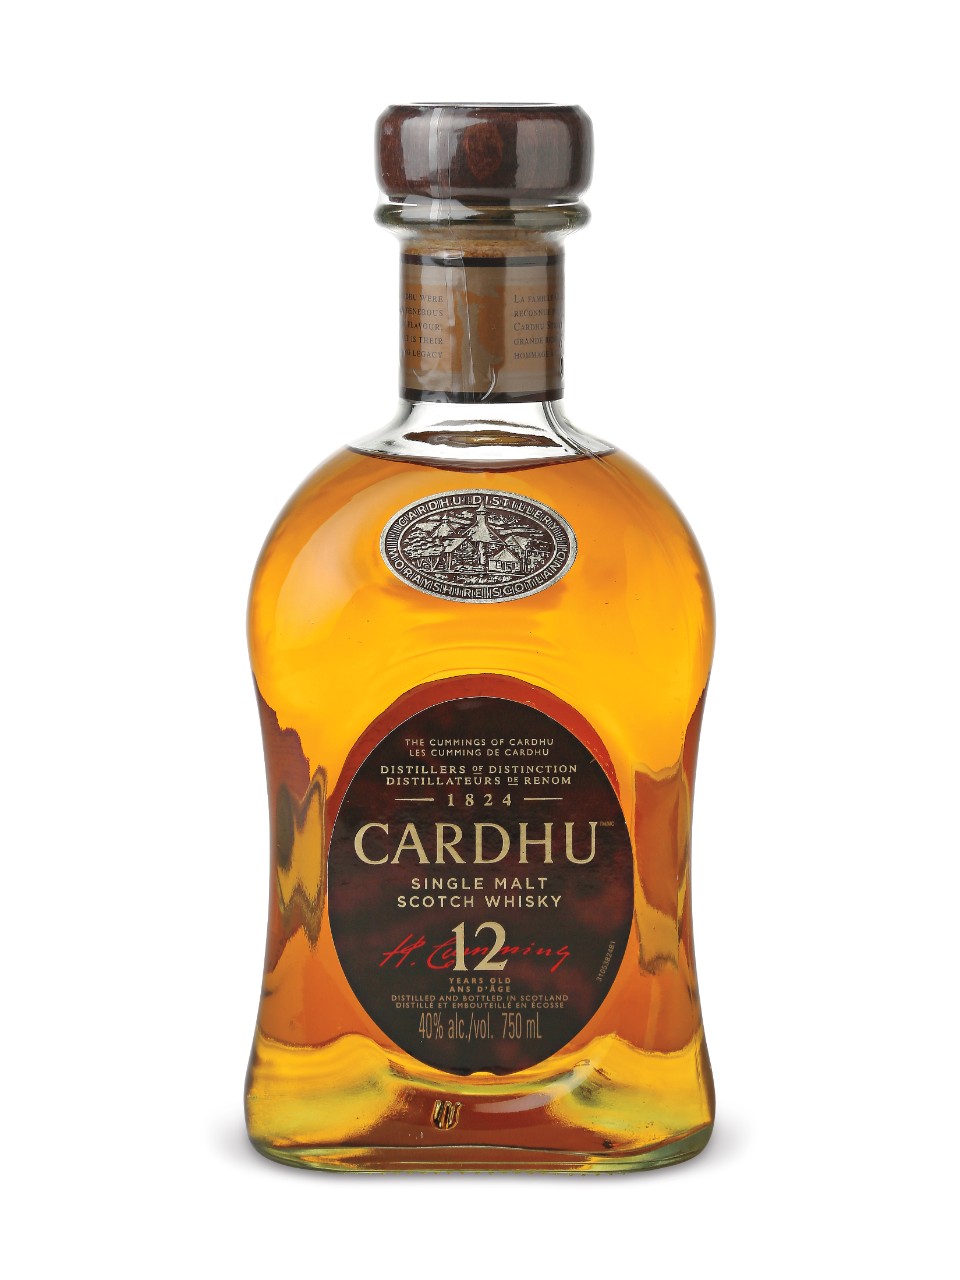 Cardhu Single Malt Scotch